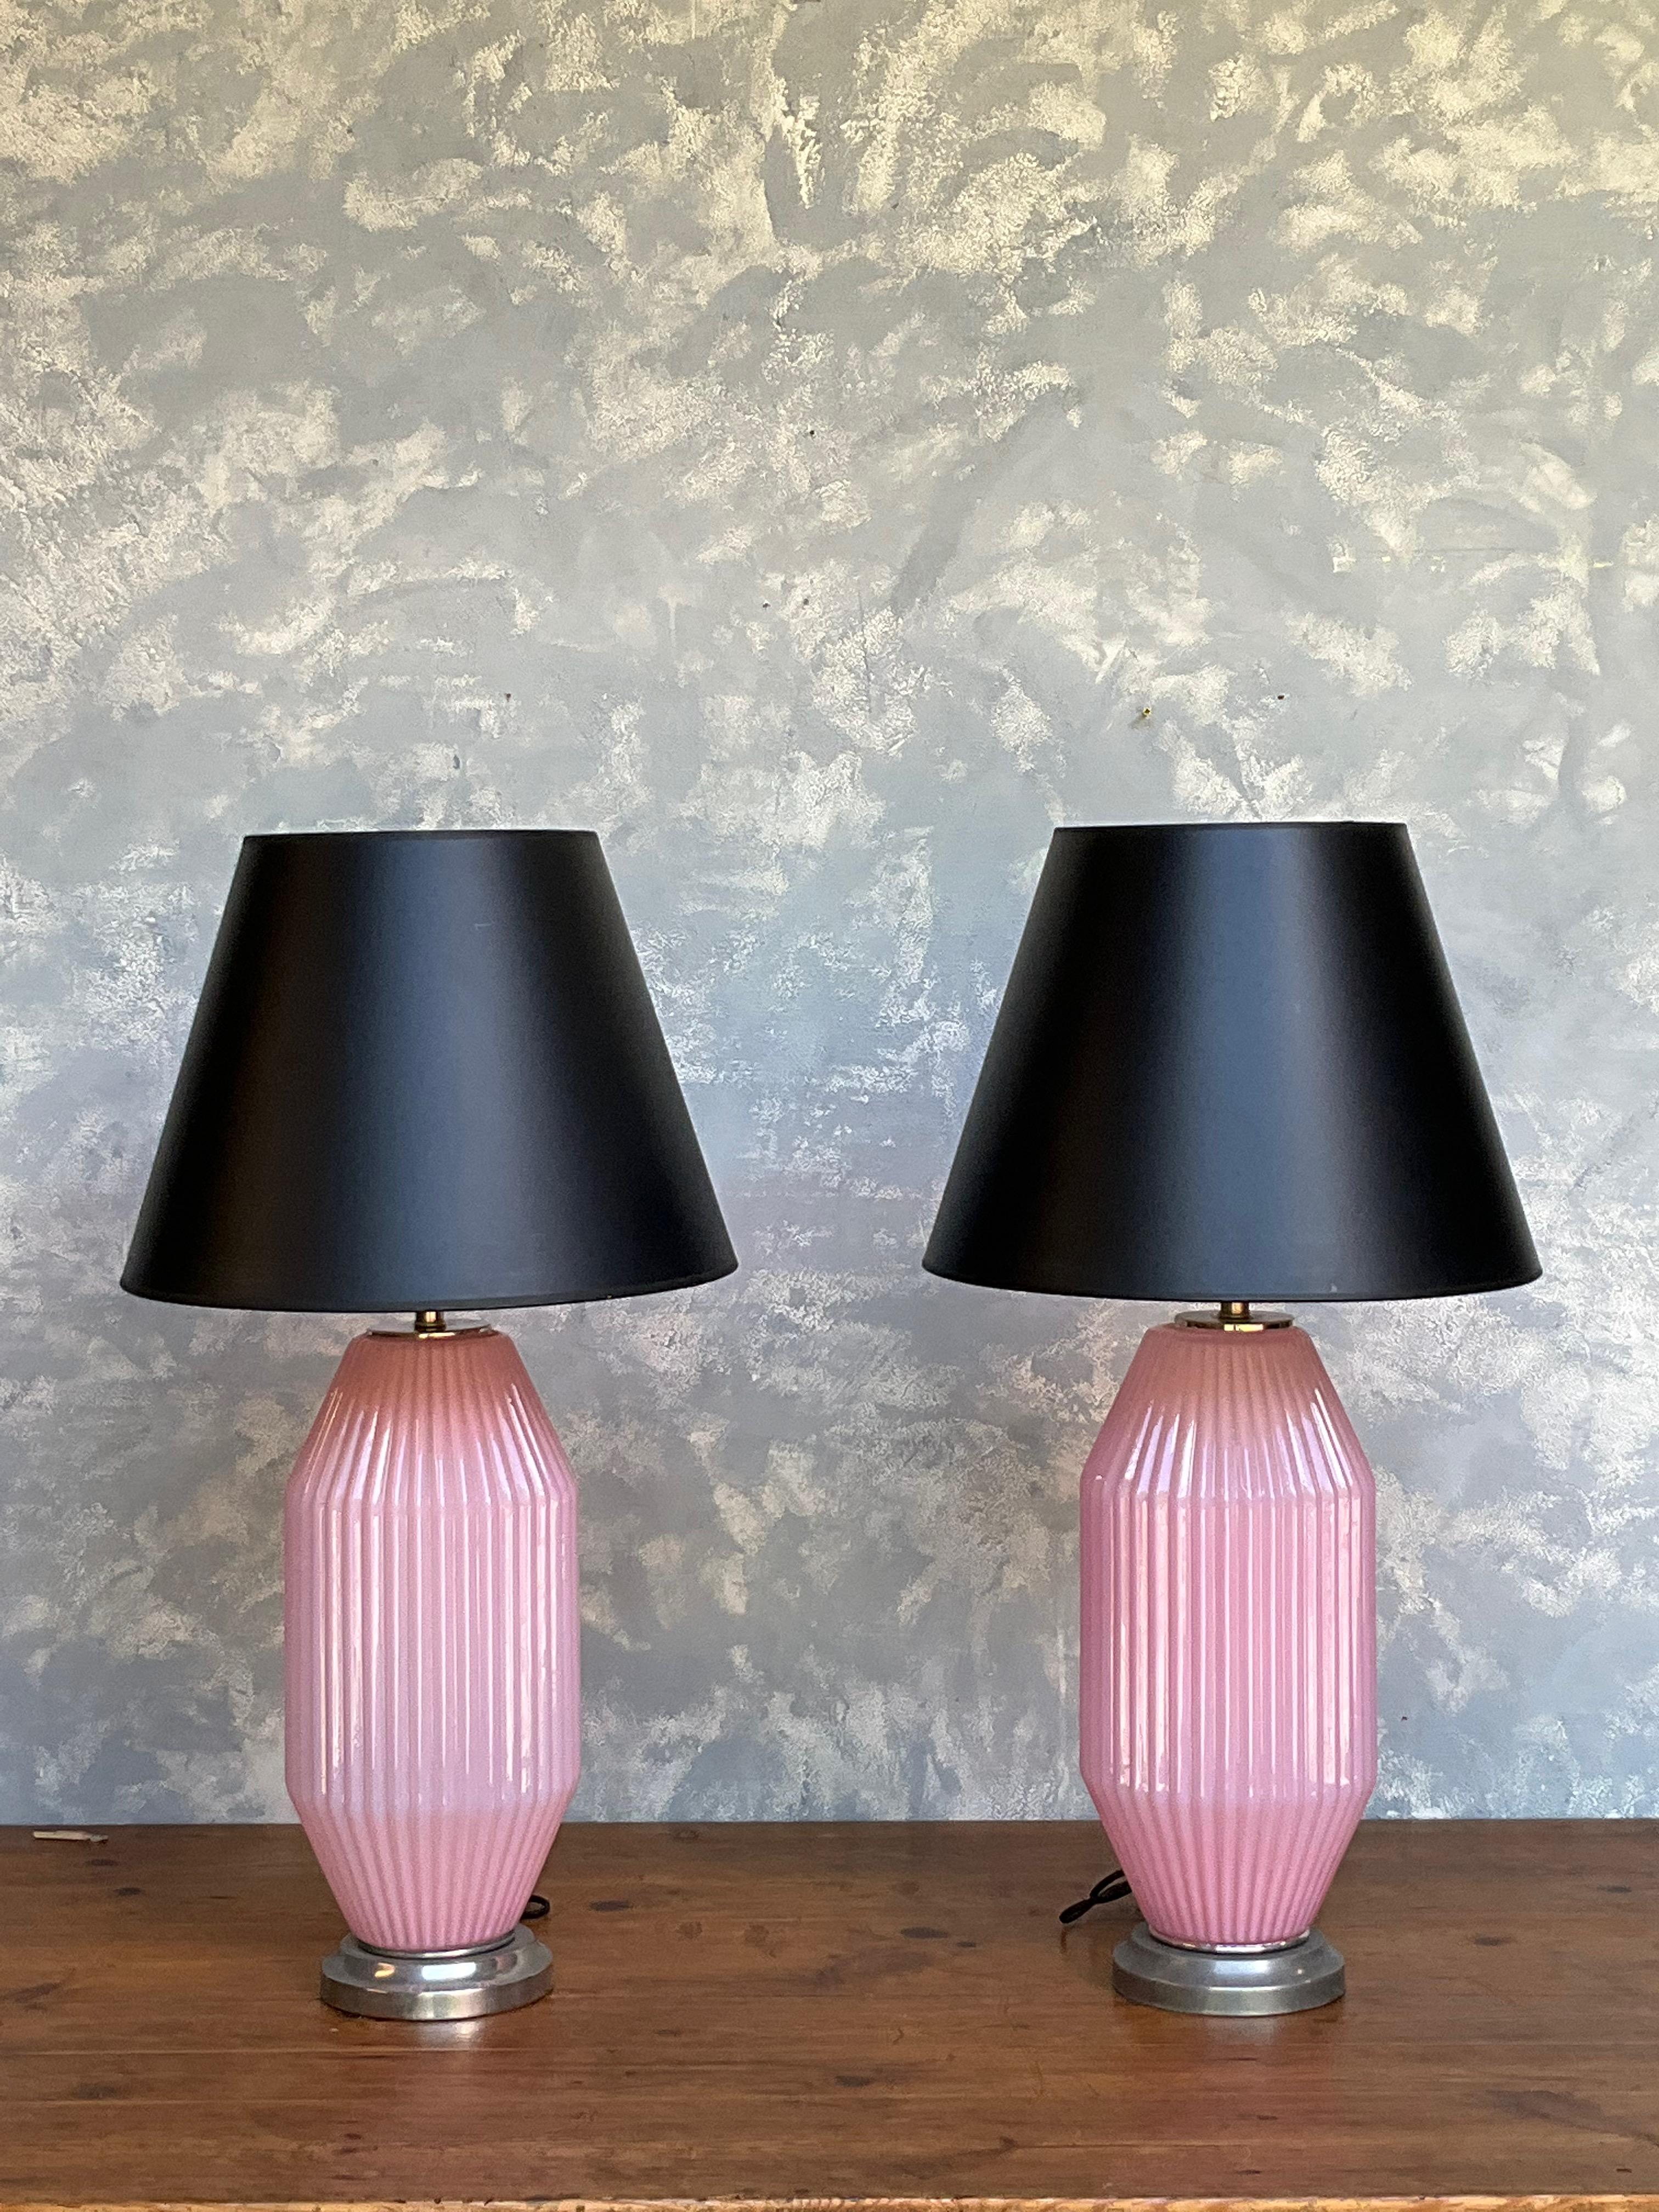 Cette belle paire de lampes italiennes en verre rose clair de Murano des années 1950 possède une ambiance enchanteresse. Dotées de nervures délicates, ces lampes exsudent l'élégance et le charme. Posées sur des socles en nickel antique, elles